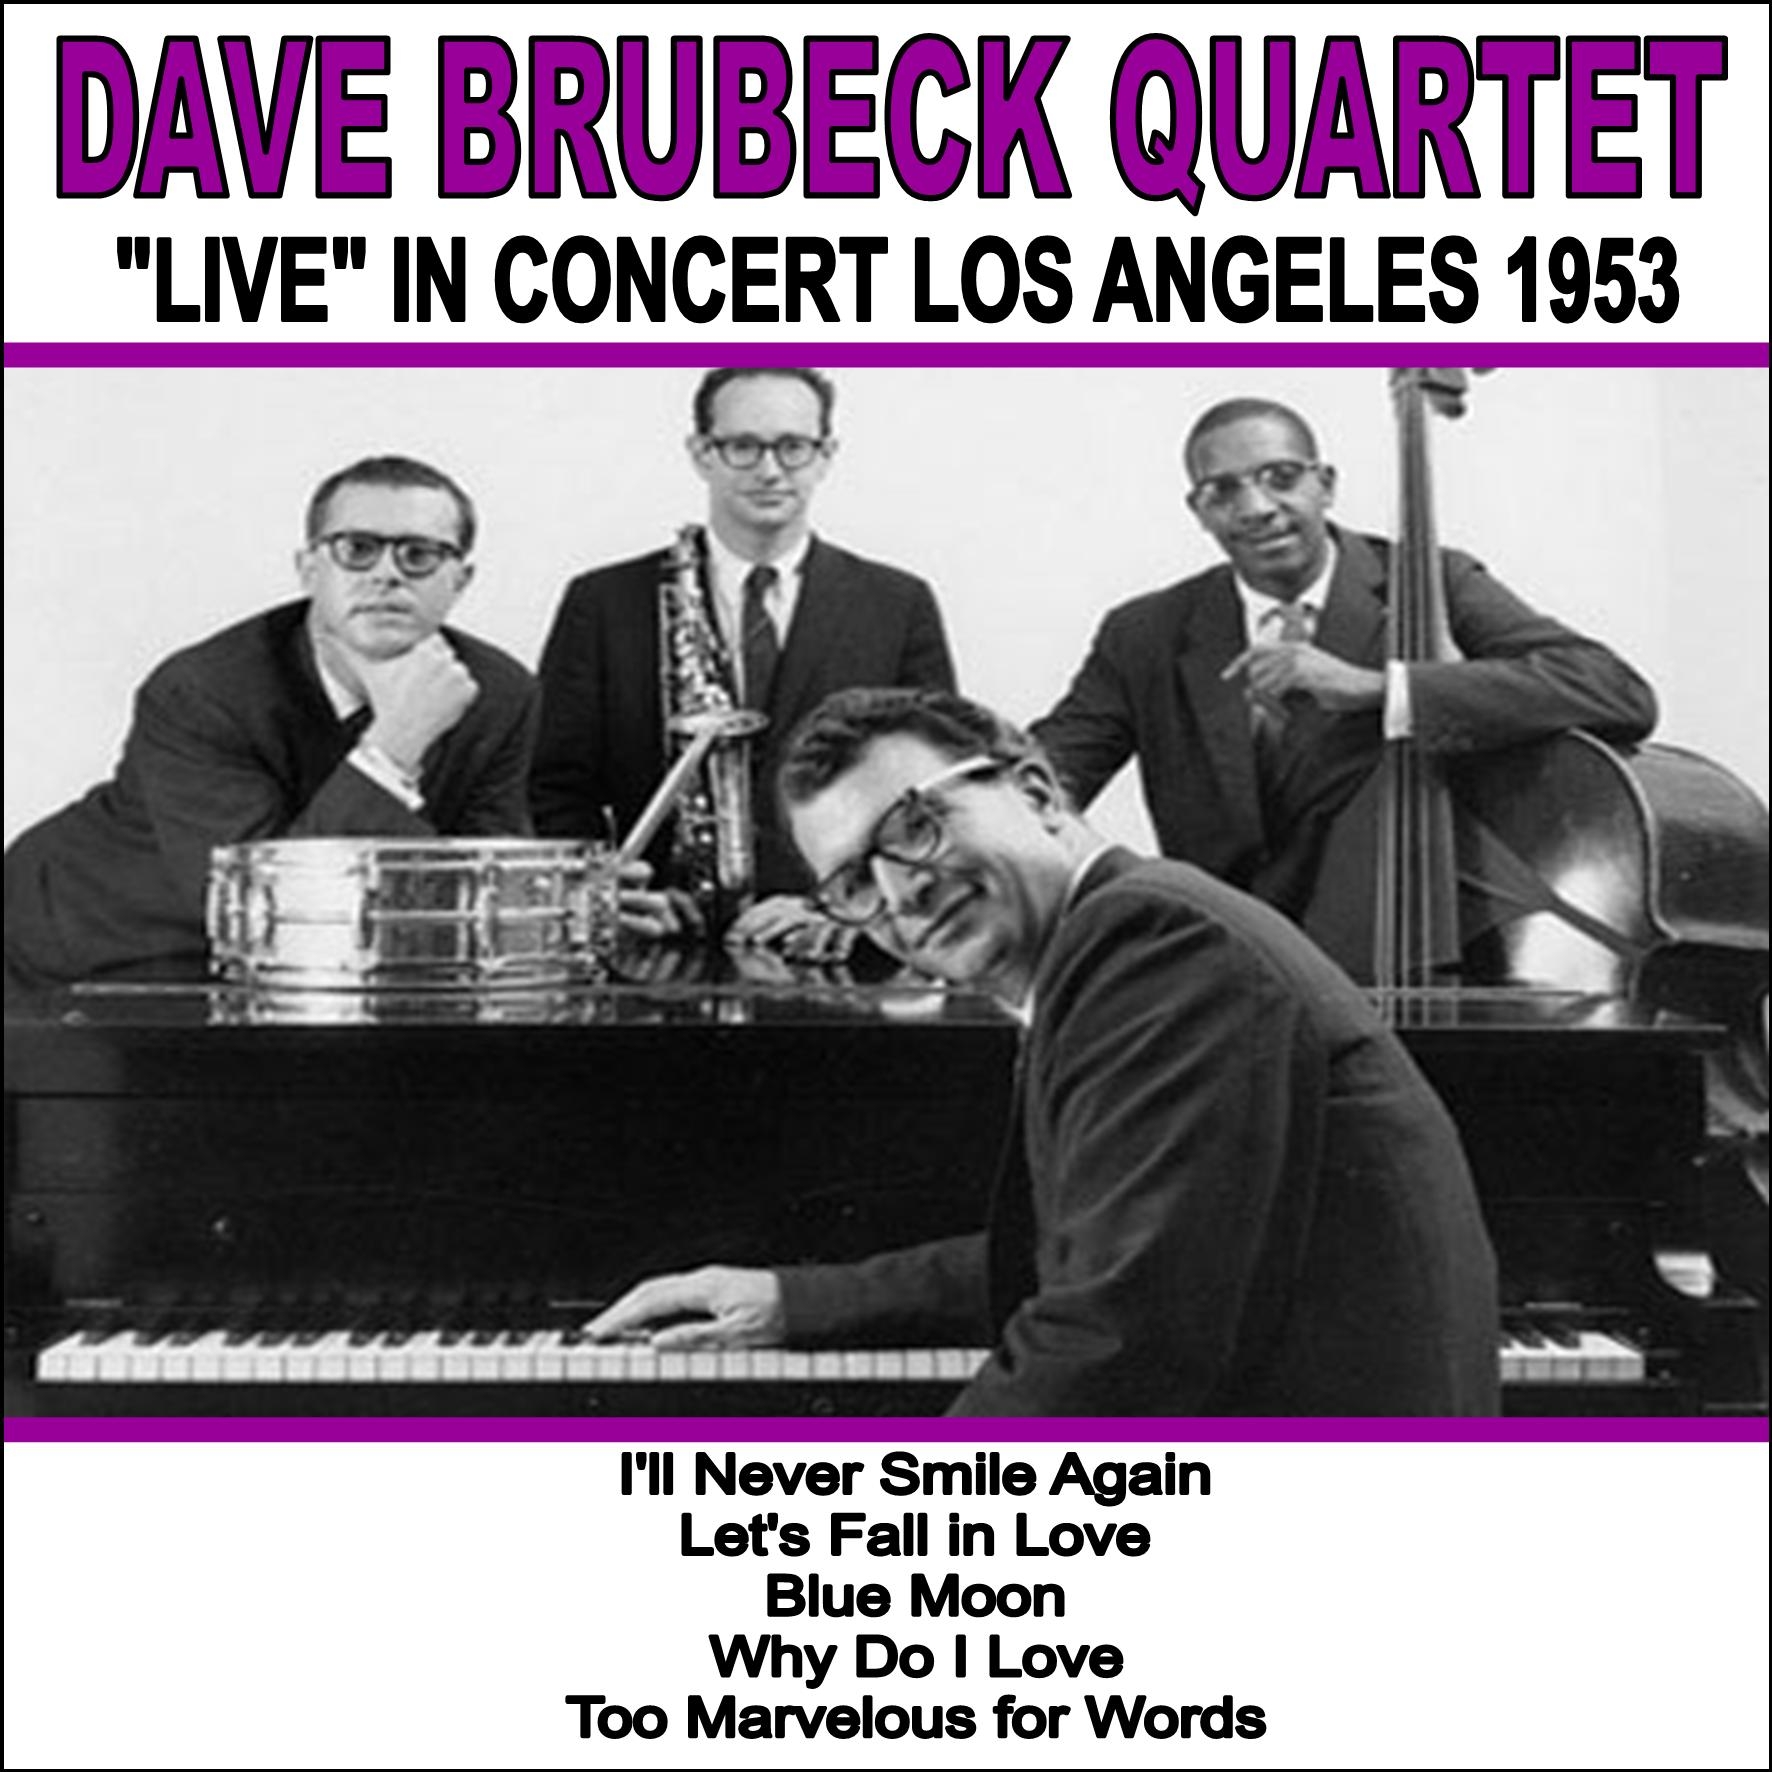 Dave Brubeck Quartet: Live in Concert, Los Angeles 1953